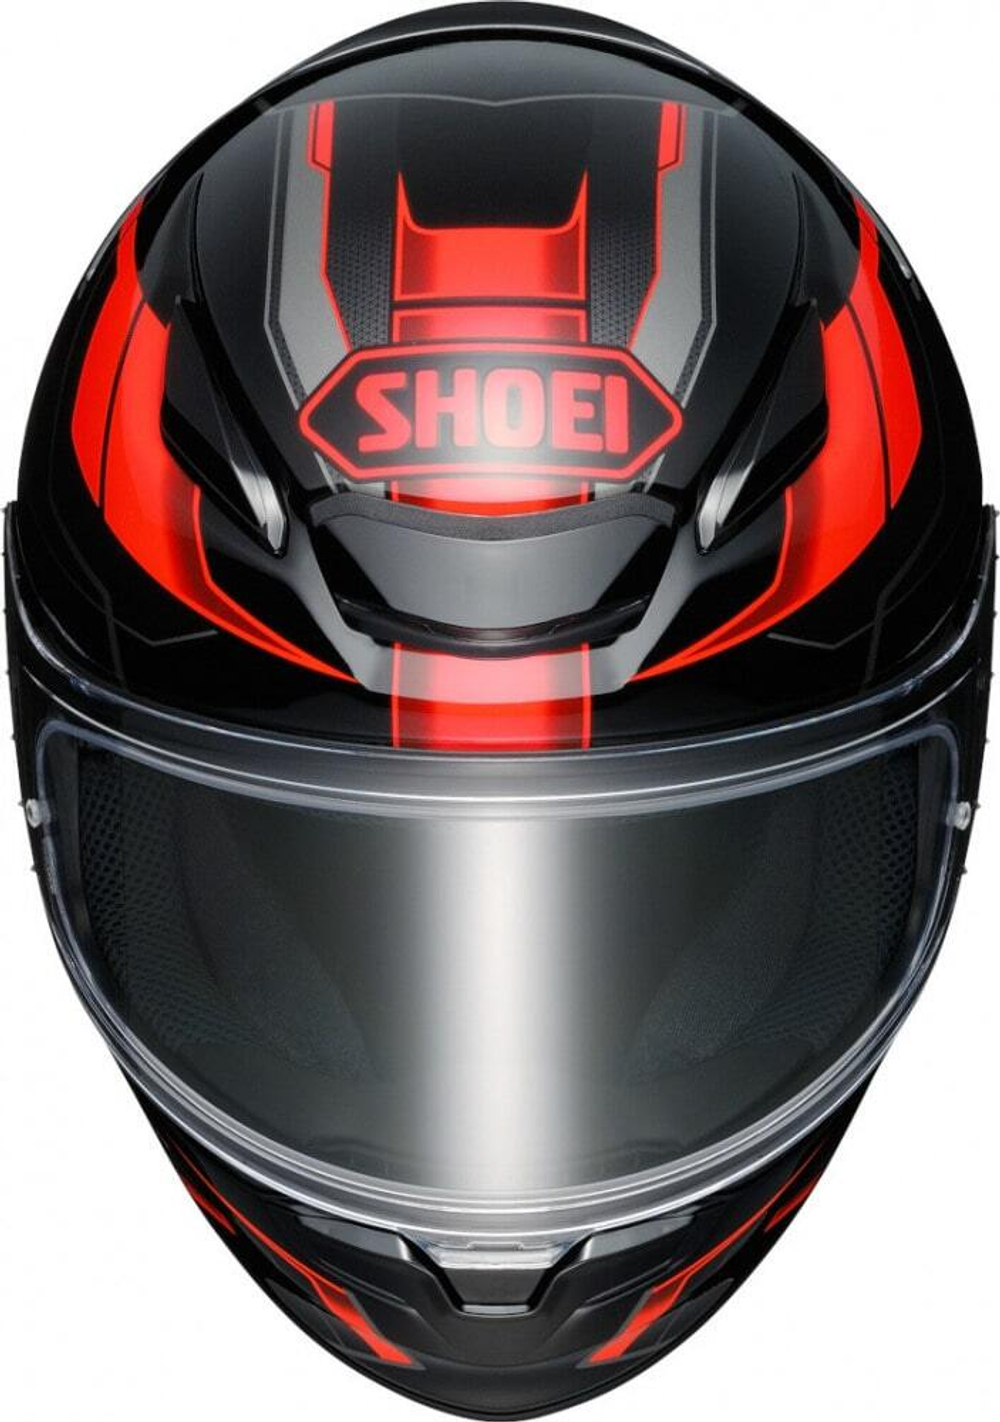 SHOEI Мотошлем интеграл спортивный NXR 2 PROLOGUE красно-черно-серый